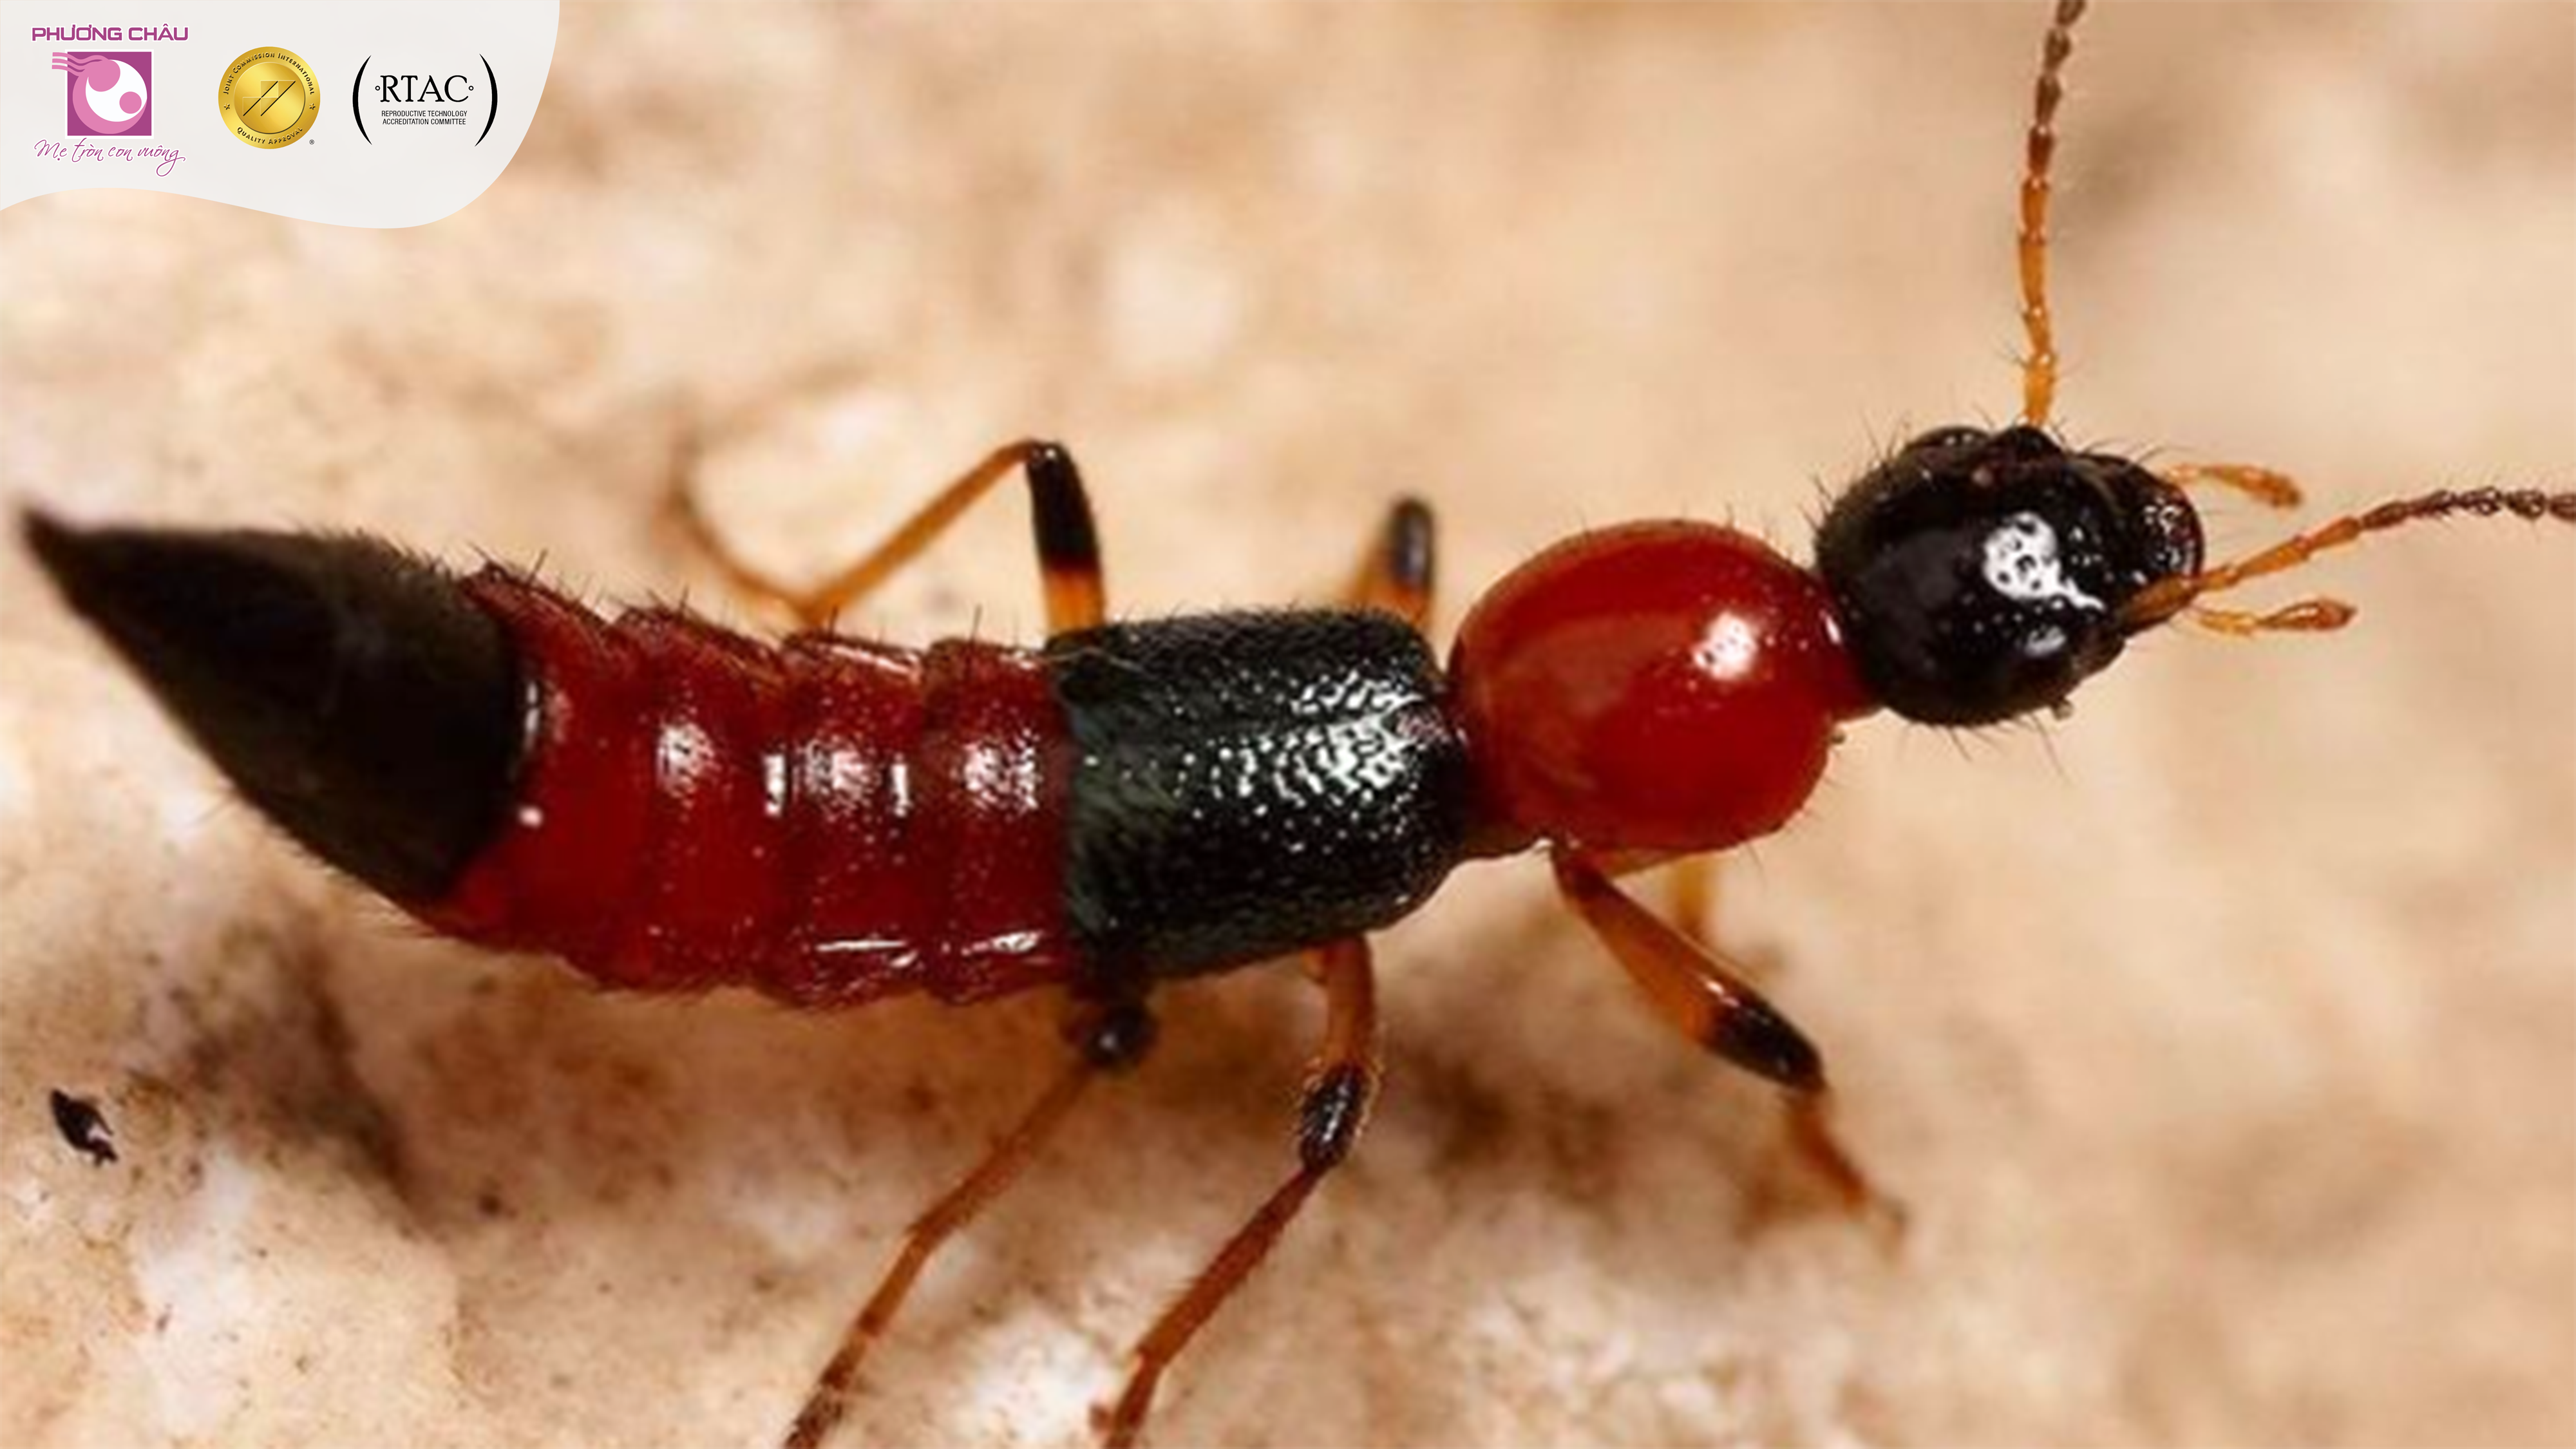  Với độc tính Pederin mạnh gấp 12 lần nọc rắn hổ mang, nhiều người lo sợ khi vô tình tiếp xúc với loài kiến này.